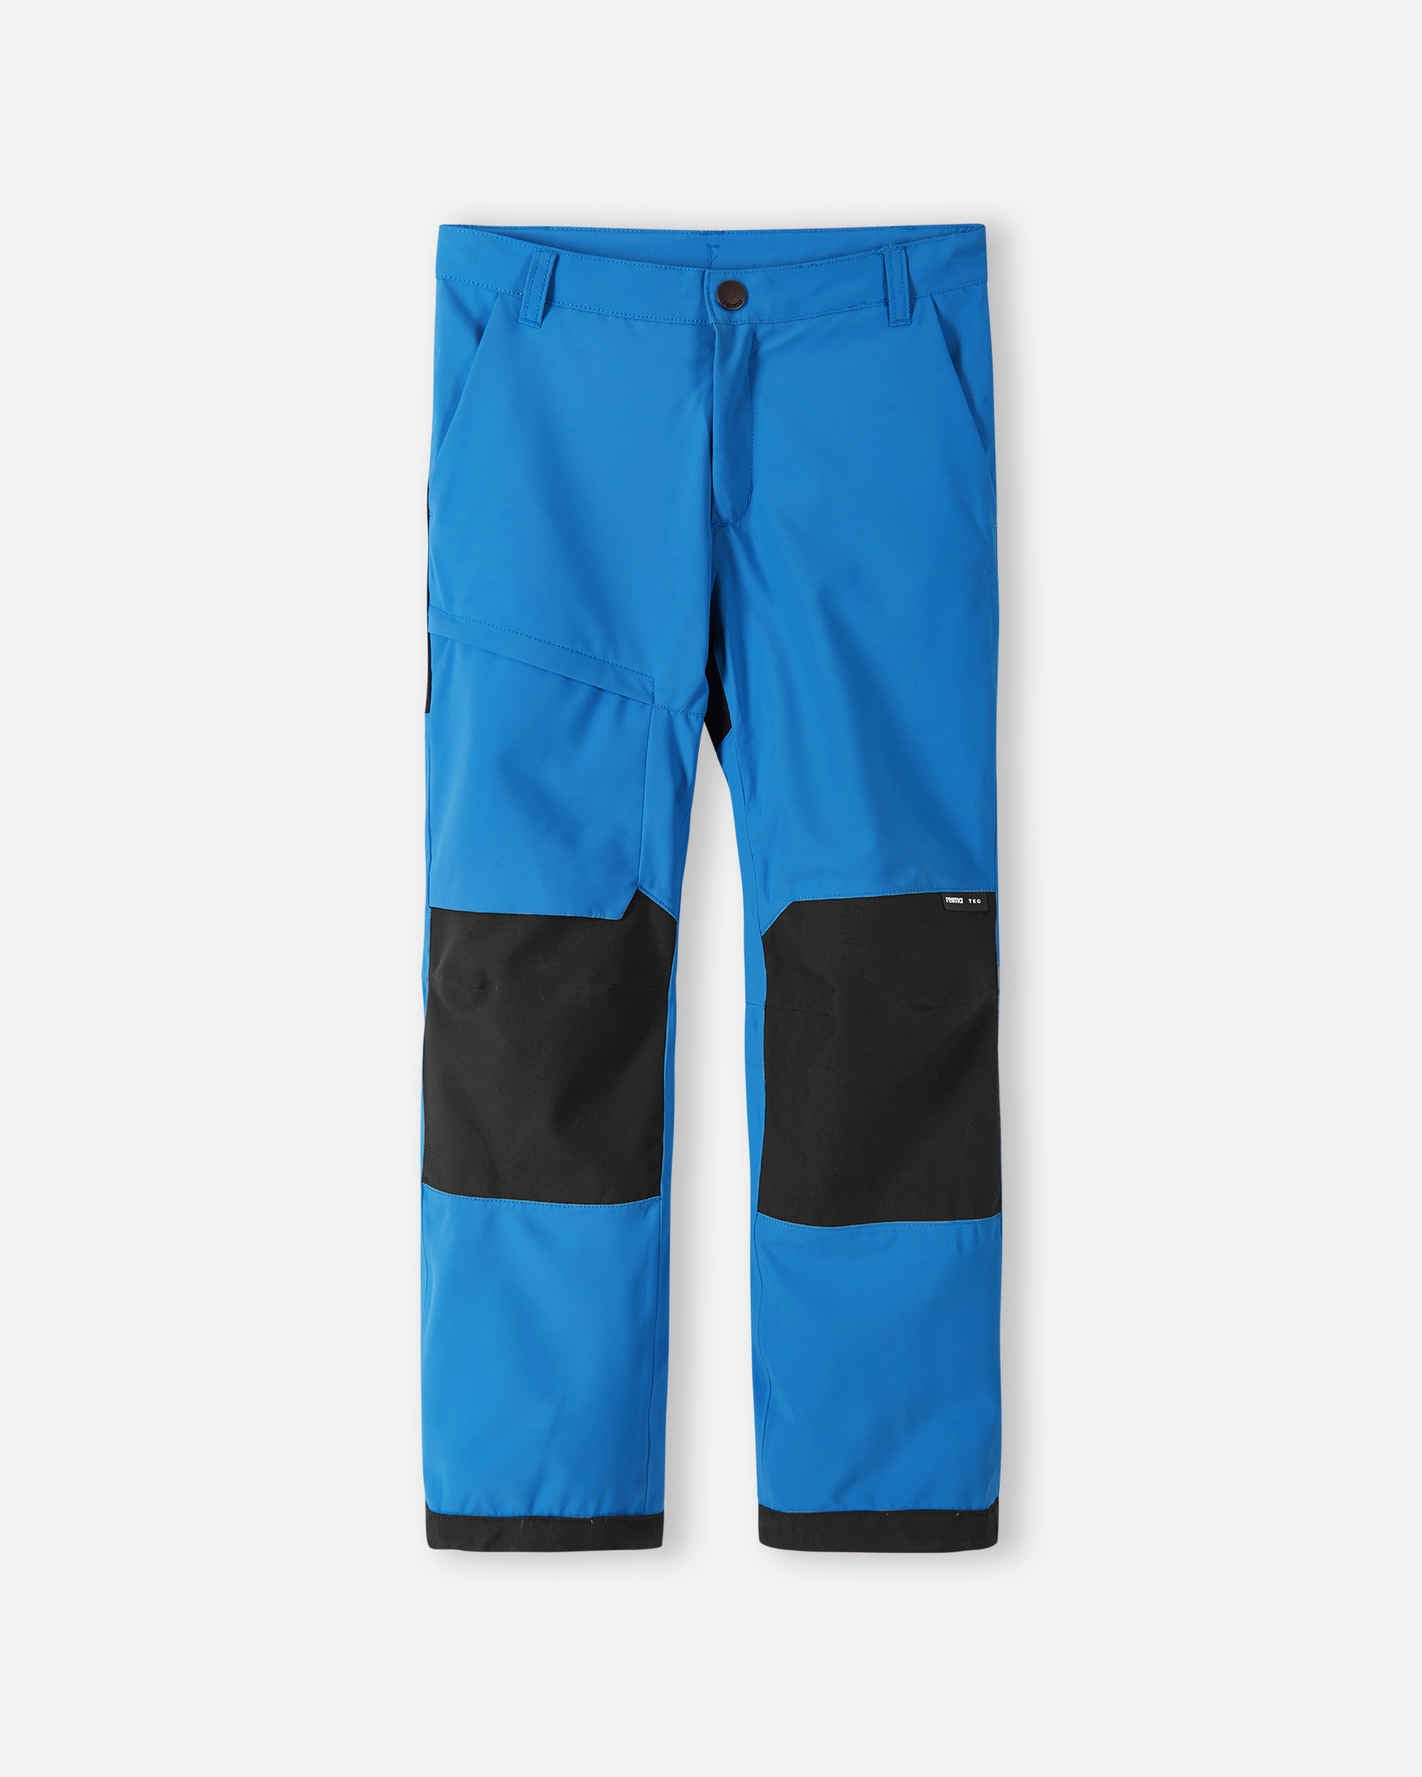 Reima Children\'s US Pants Waterproof Durable from